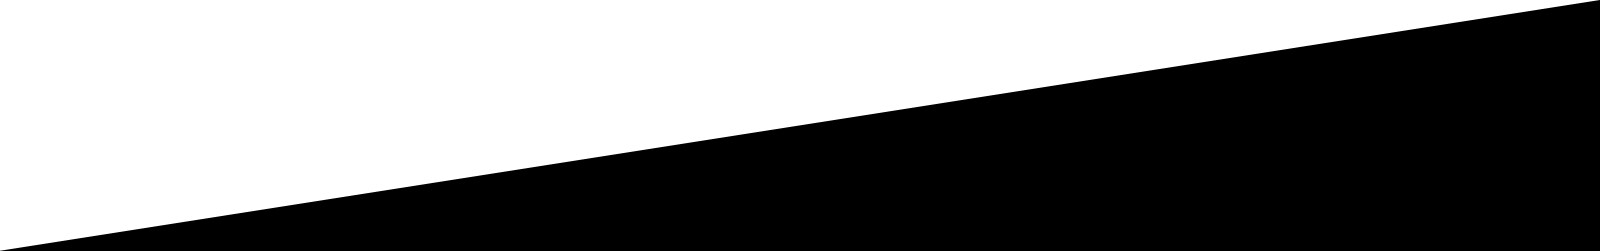 Diagonal linje mellom hvitt område og svart område for designformål